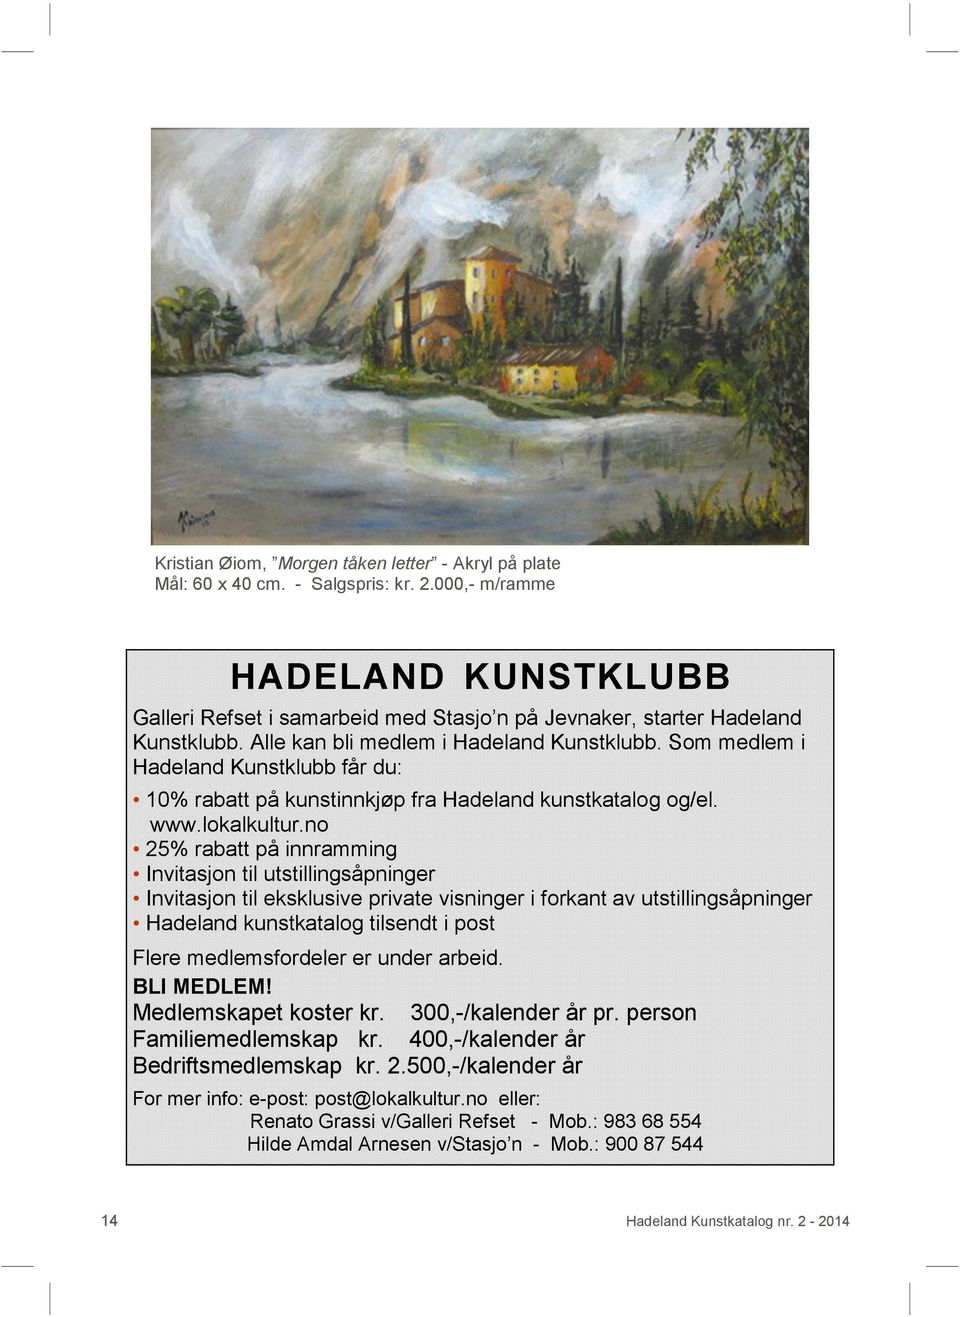 Som medlem i Hadeland Kunstklubb får du: 10% rabatt på kunstinnkjøp fra Hadeland kunstkatalog og/el. www.lokalkultur.